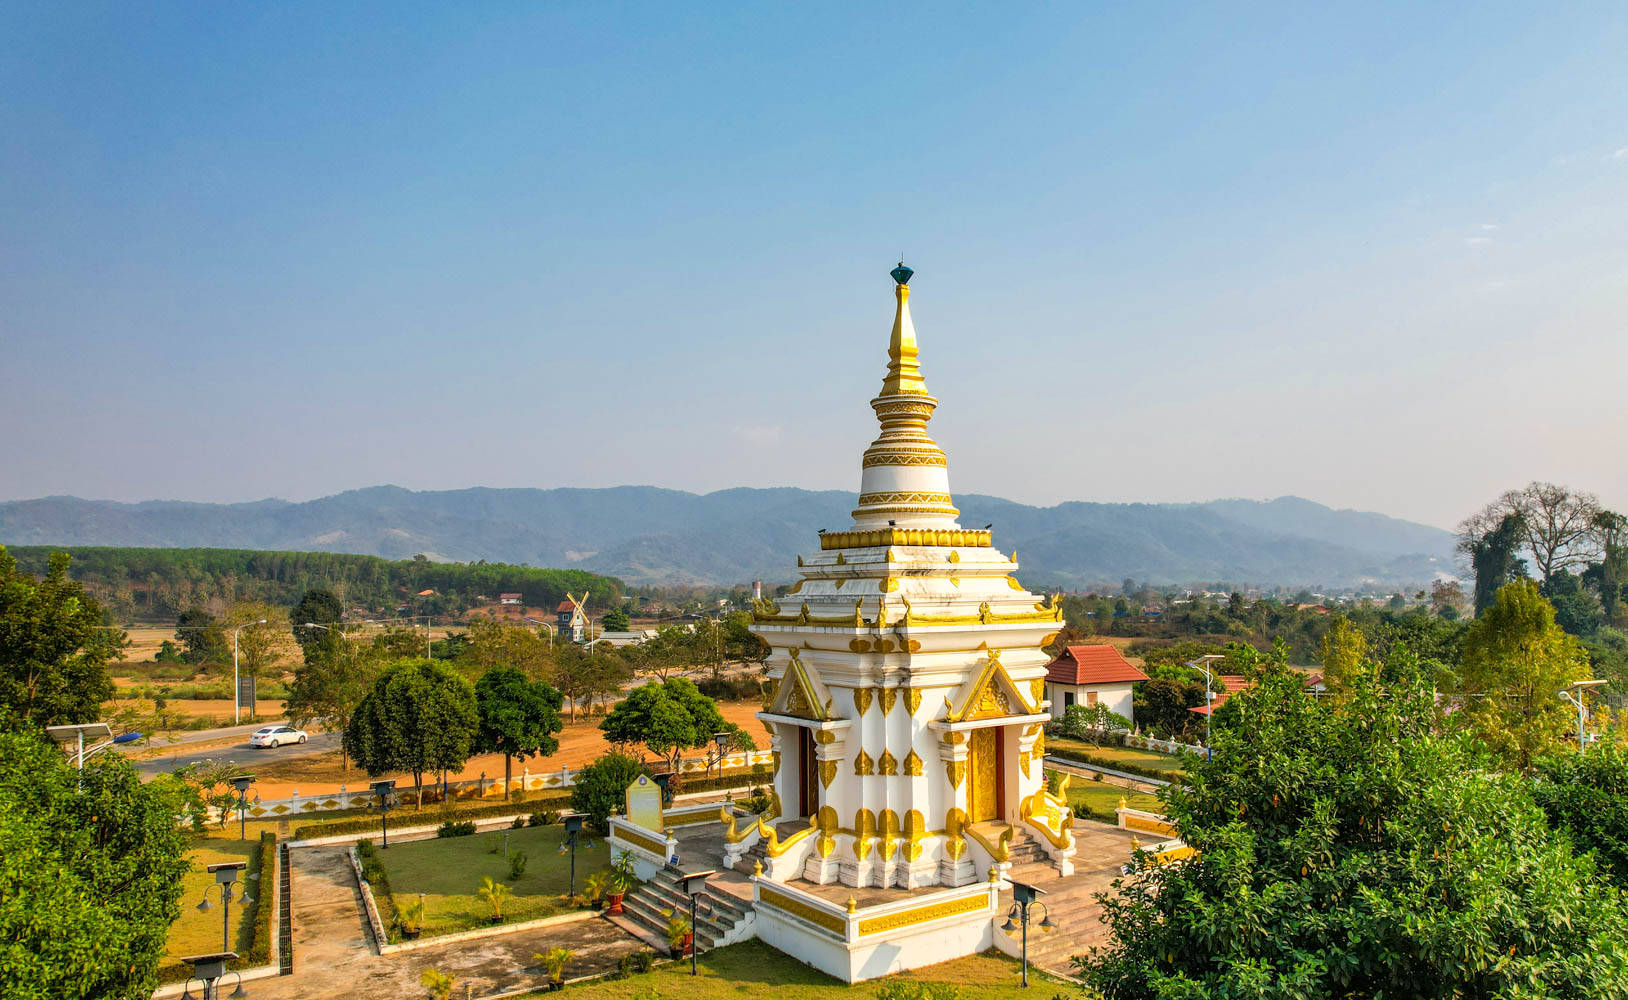 老挝旅游安全图片